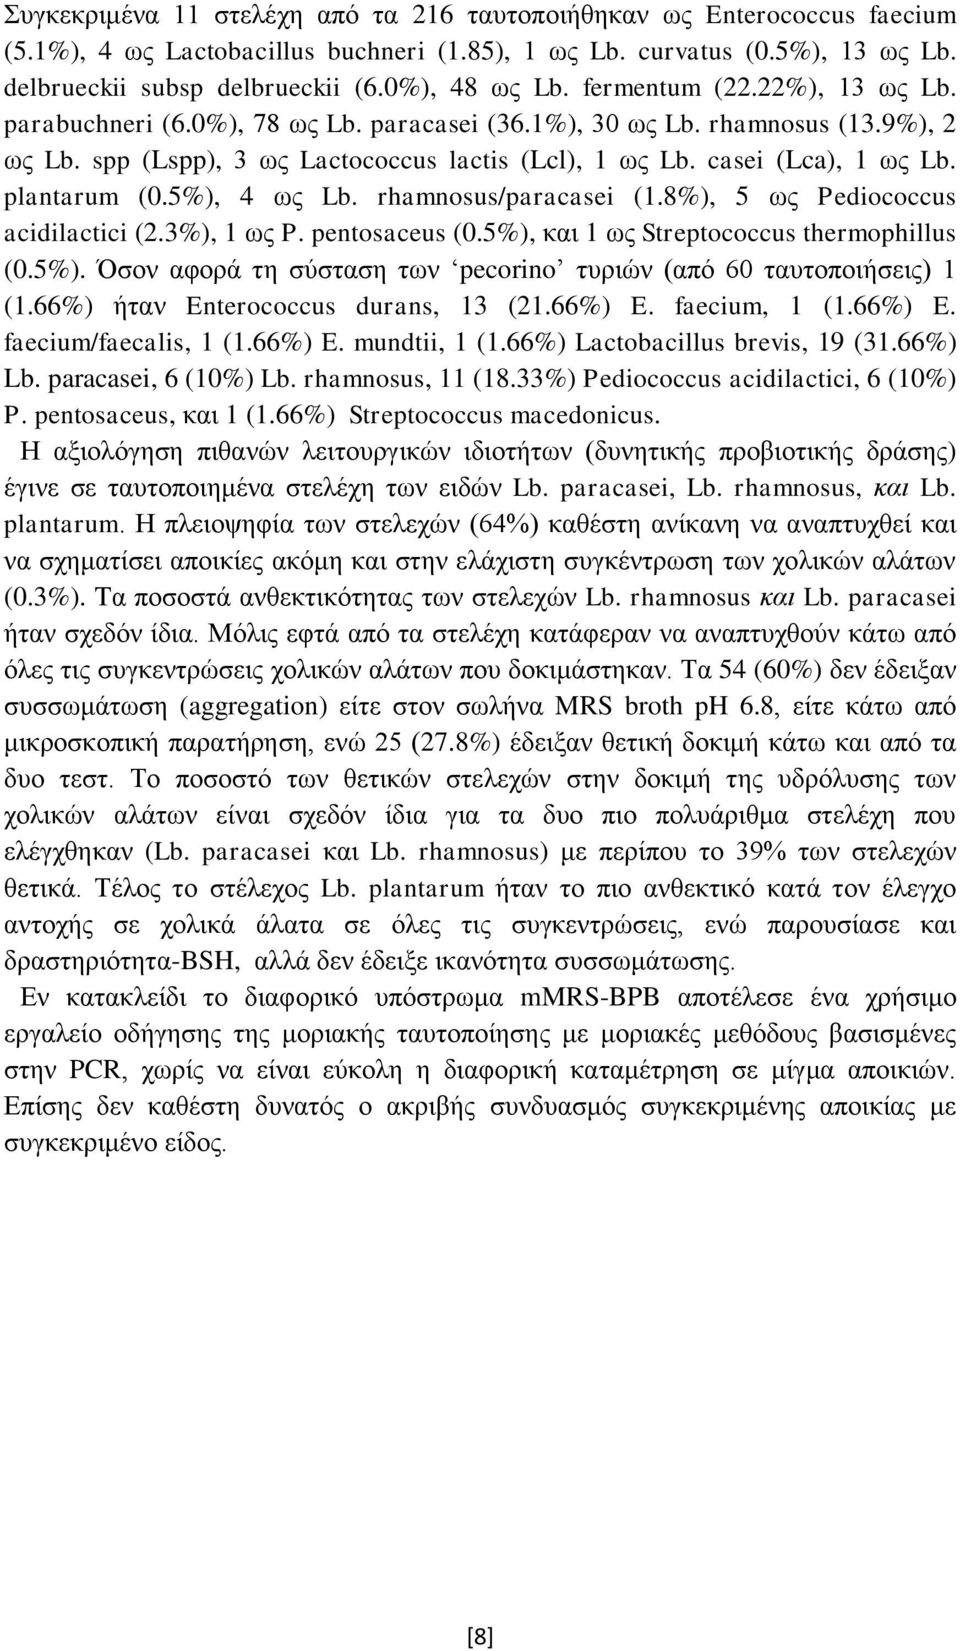 casei (Lca), 1 ως Lb. plantarum (0.5%), 4 ως Lb. rhamnosus/paracasei (1.8%), 5 ως Pediococcus acidilactici (2.3%), 1 ως P. pentosaceus (0.5%), και 1 ως Streptococcus thermophillus (0.5%). Όσον αφορά τη σύσταση των pecorino τυριών (από 60 ταυτοποιήσεις) 1 (1.